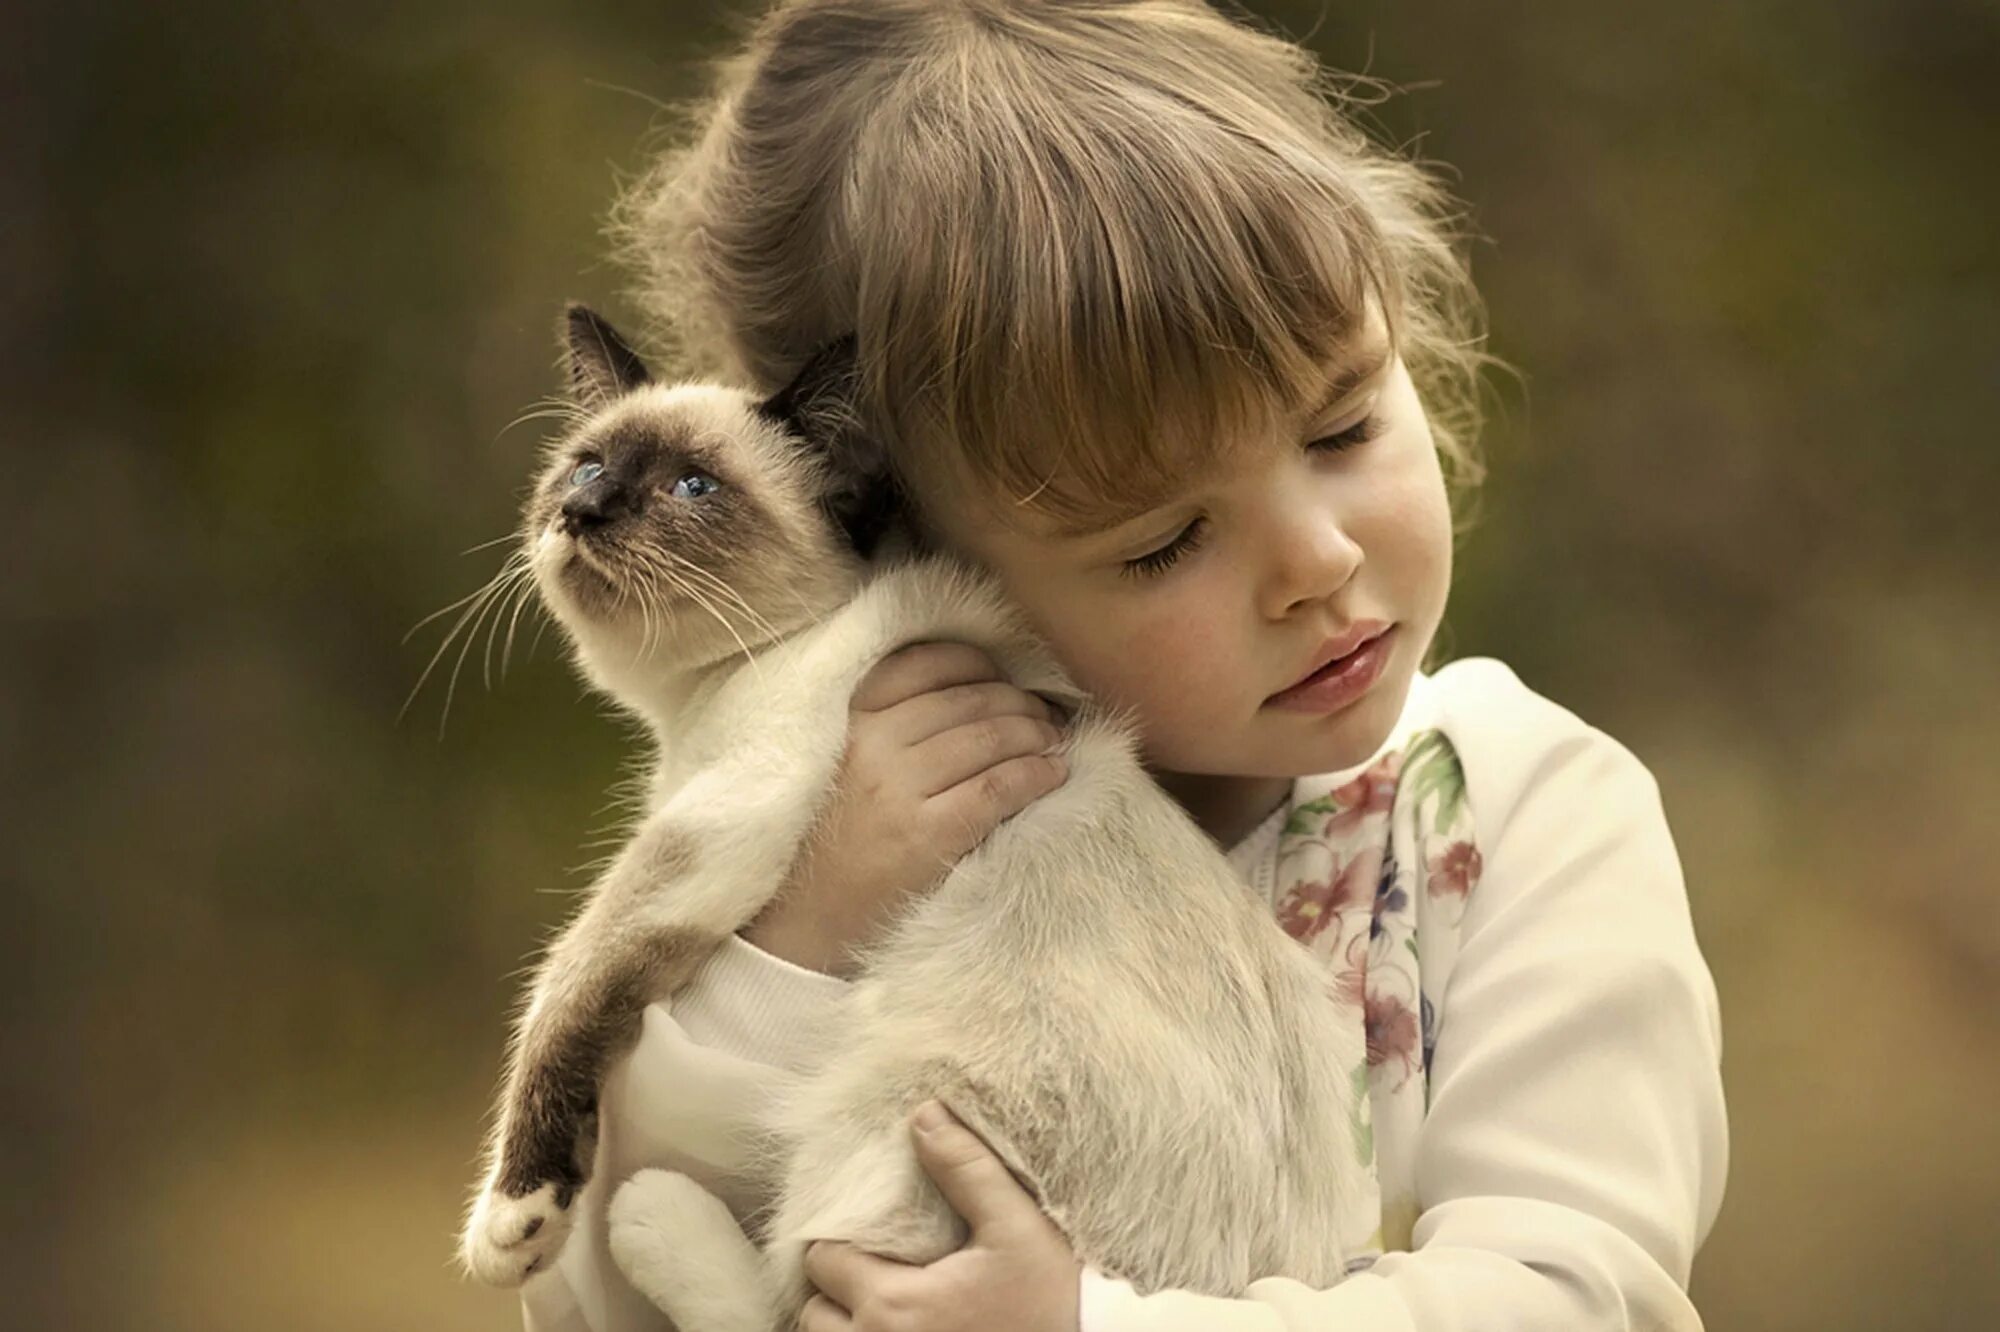 Картинка милый друг. Для детей. Животные. О доброте. Маленькие дети и животные. Любовь к животным.